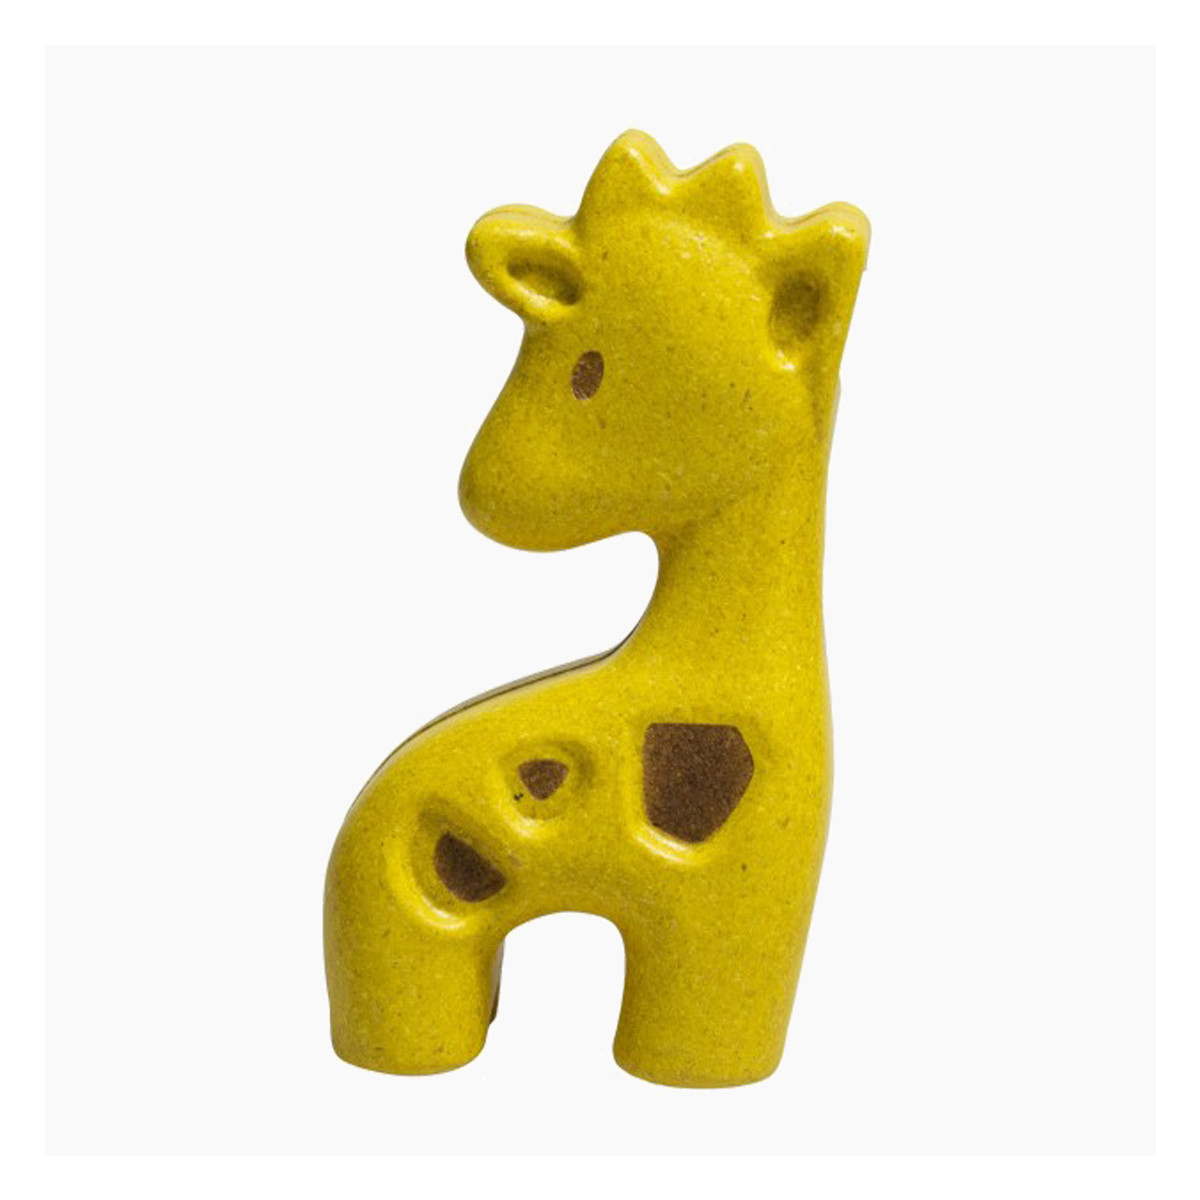 Plan Toy Giraffe